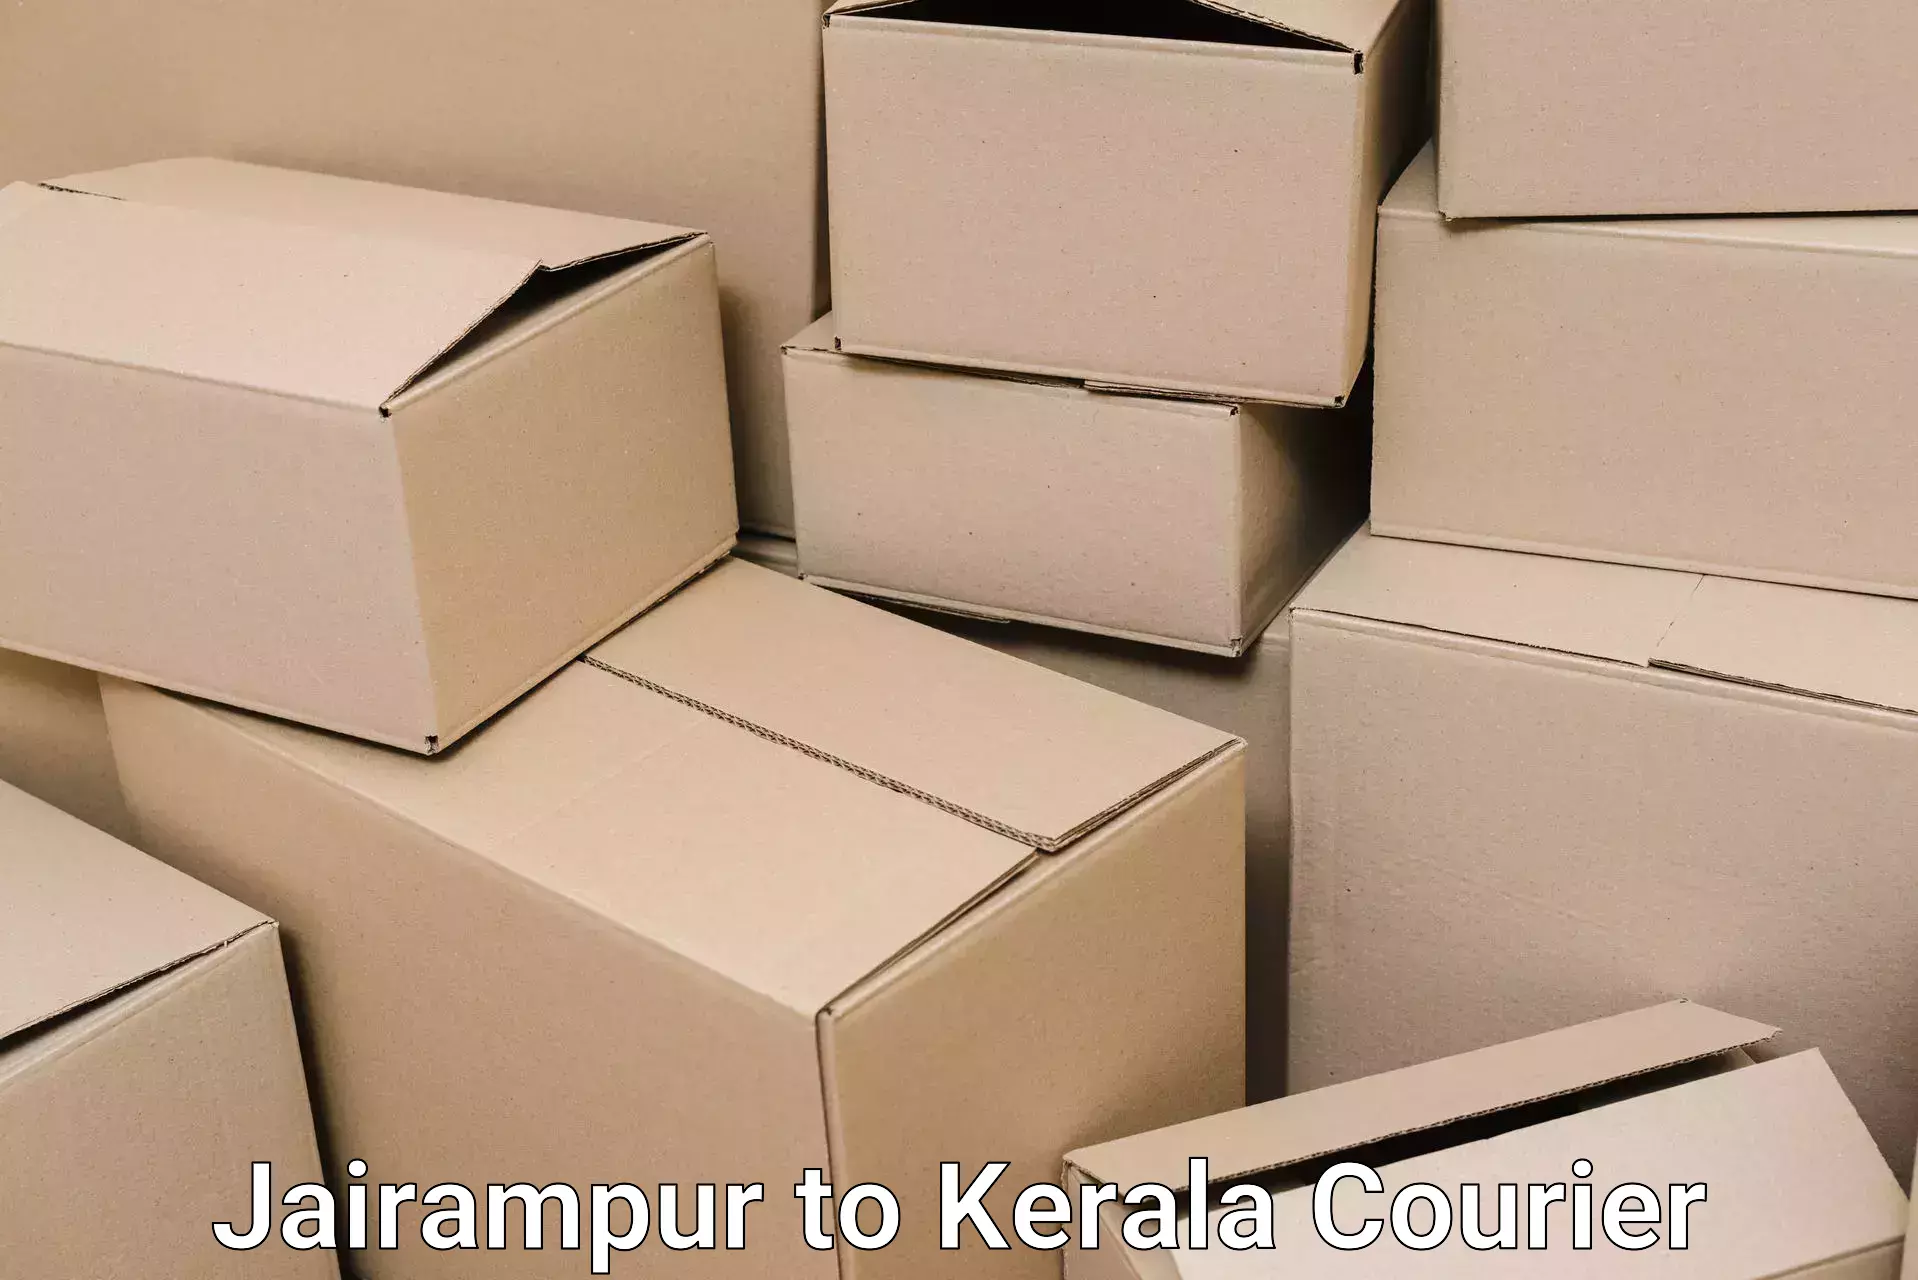 Home goods moving company in Jairampur to Cherpulassery